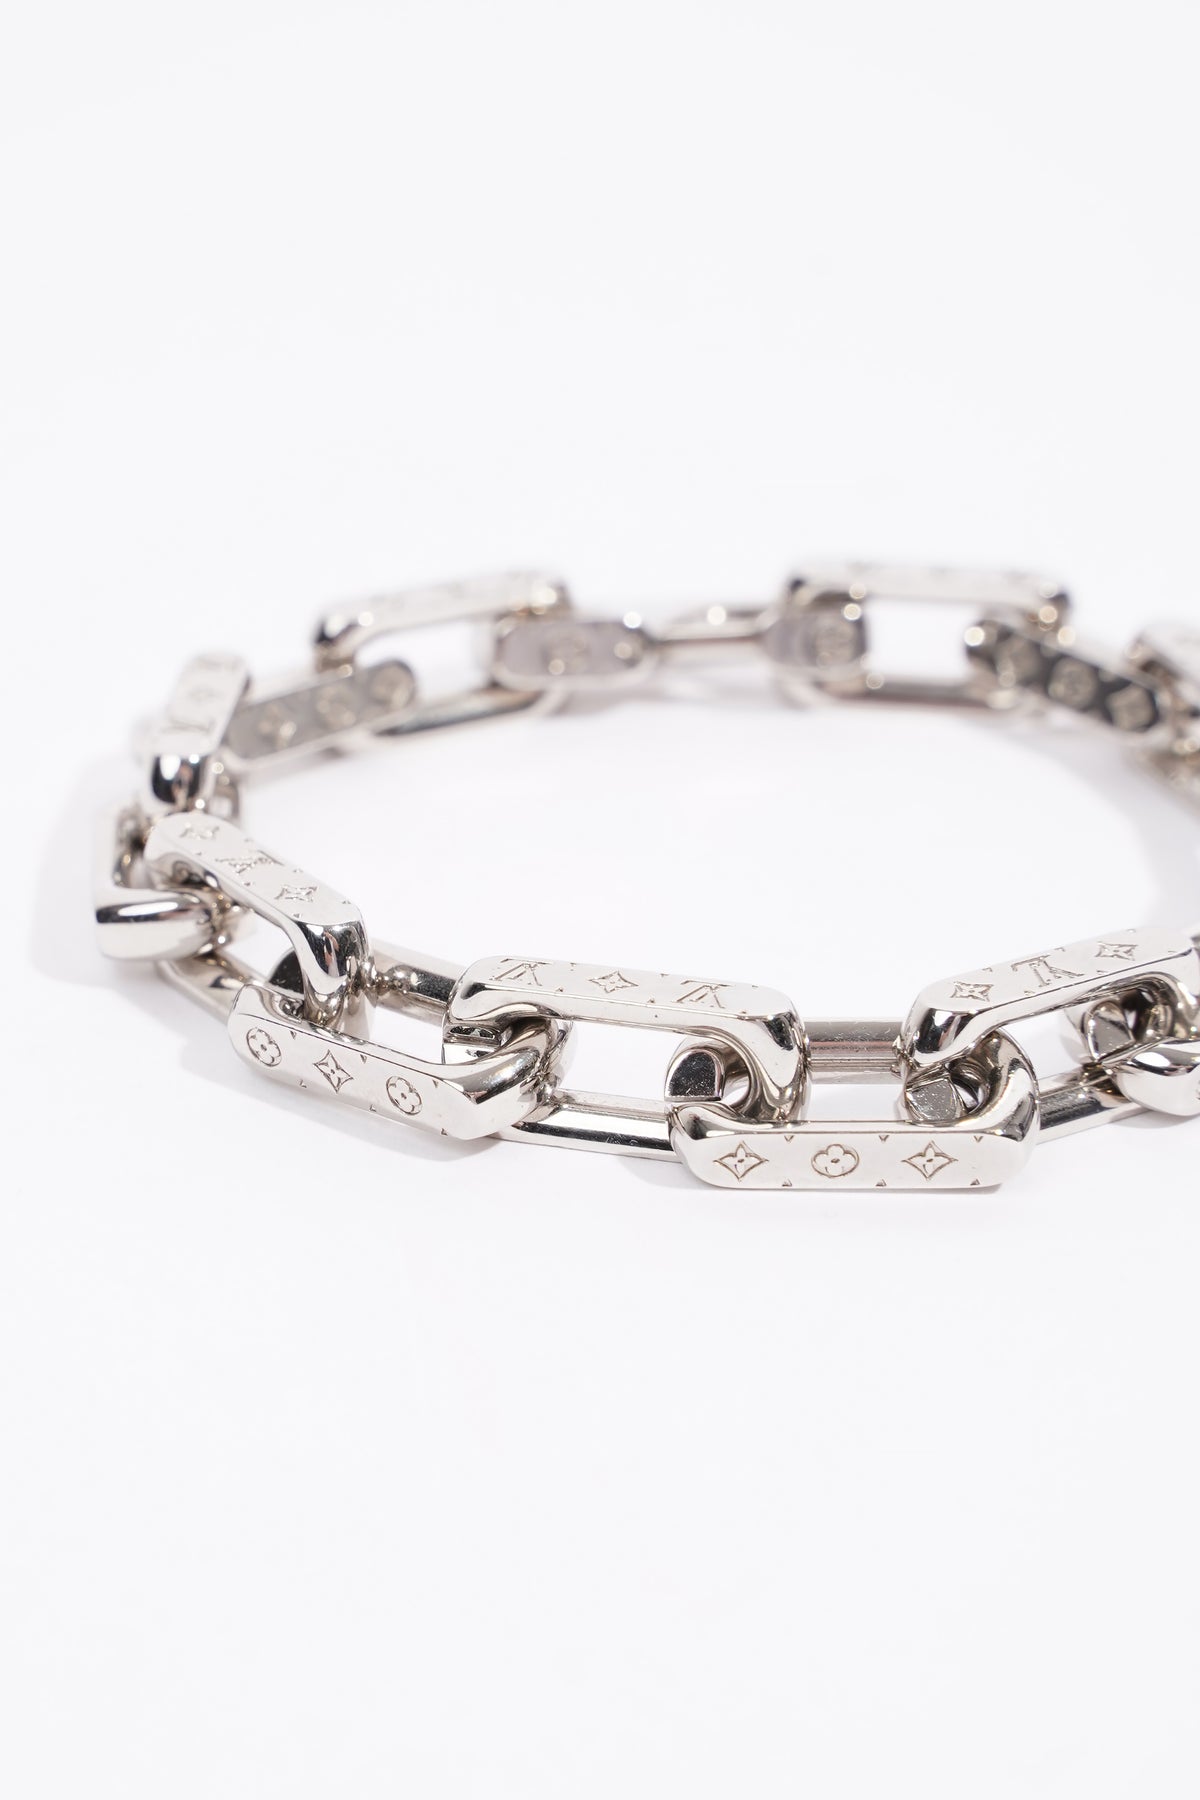 LOUIS VUITTON Bracelet Bangle Chain Links LV M69988 Silver Metal 2022SS  Size M | eBay